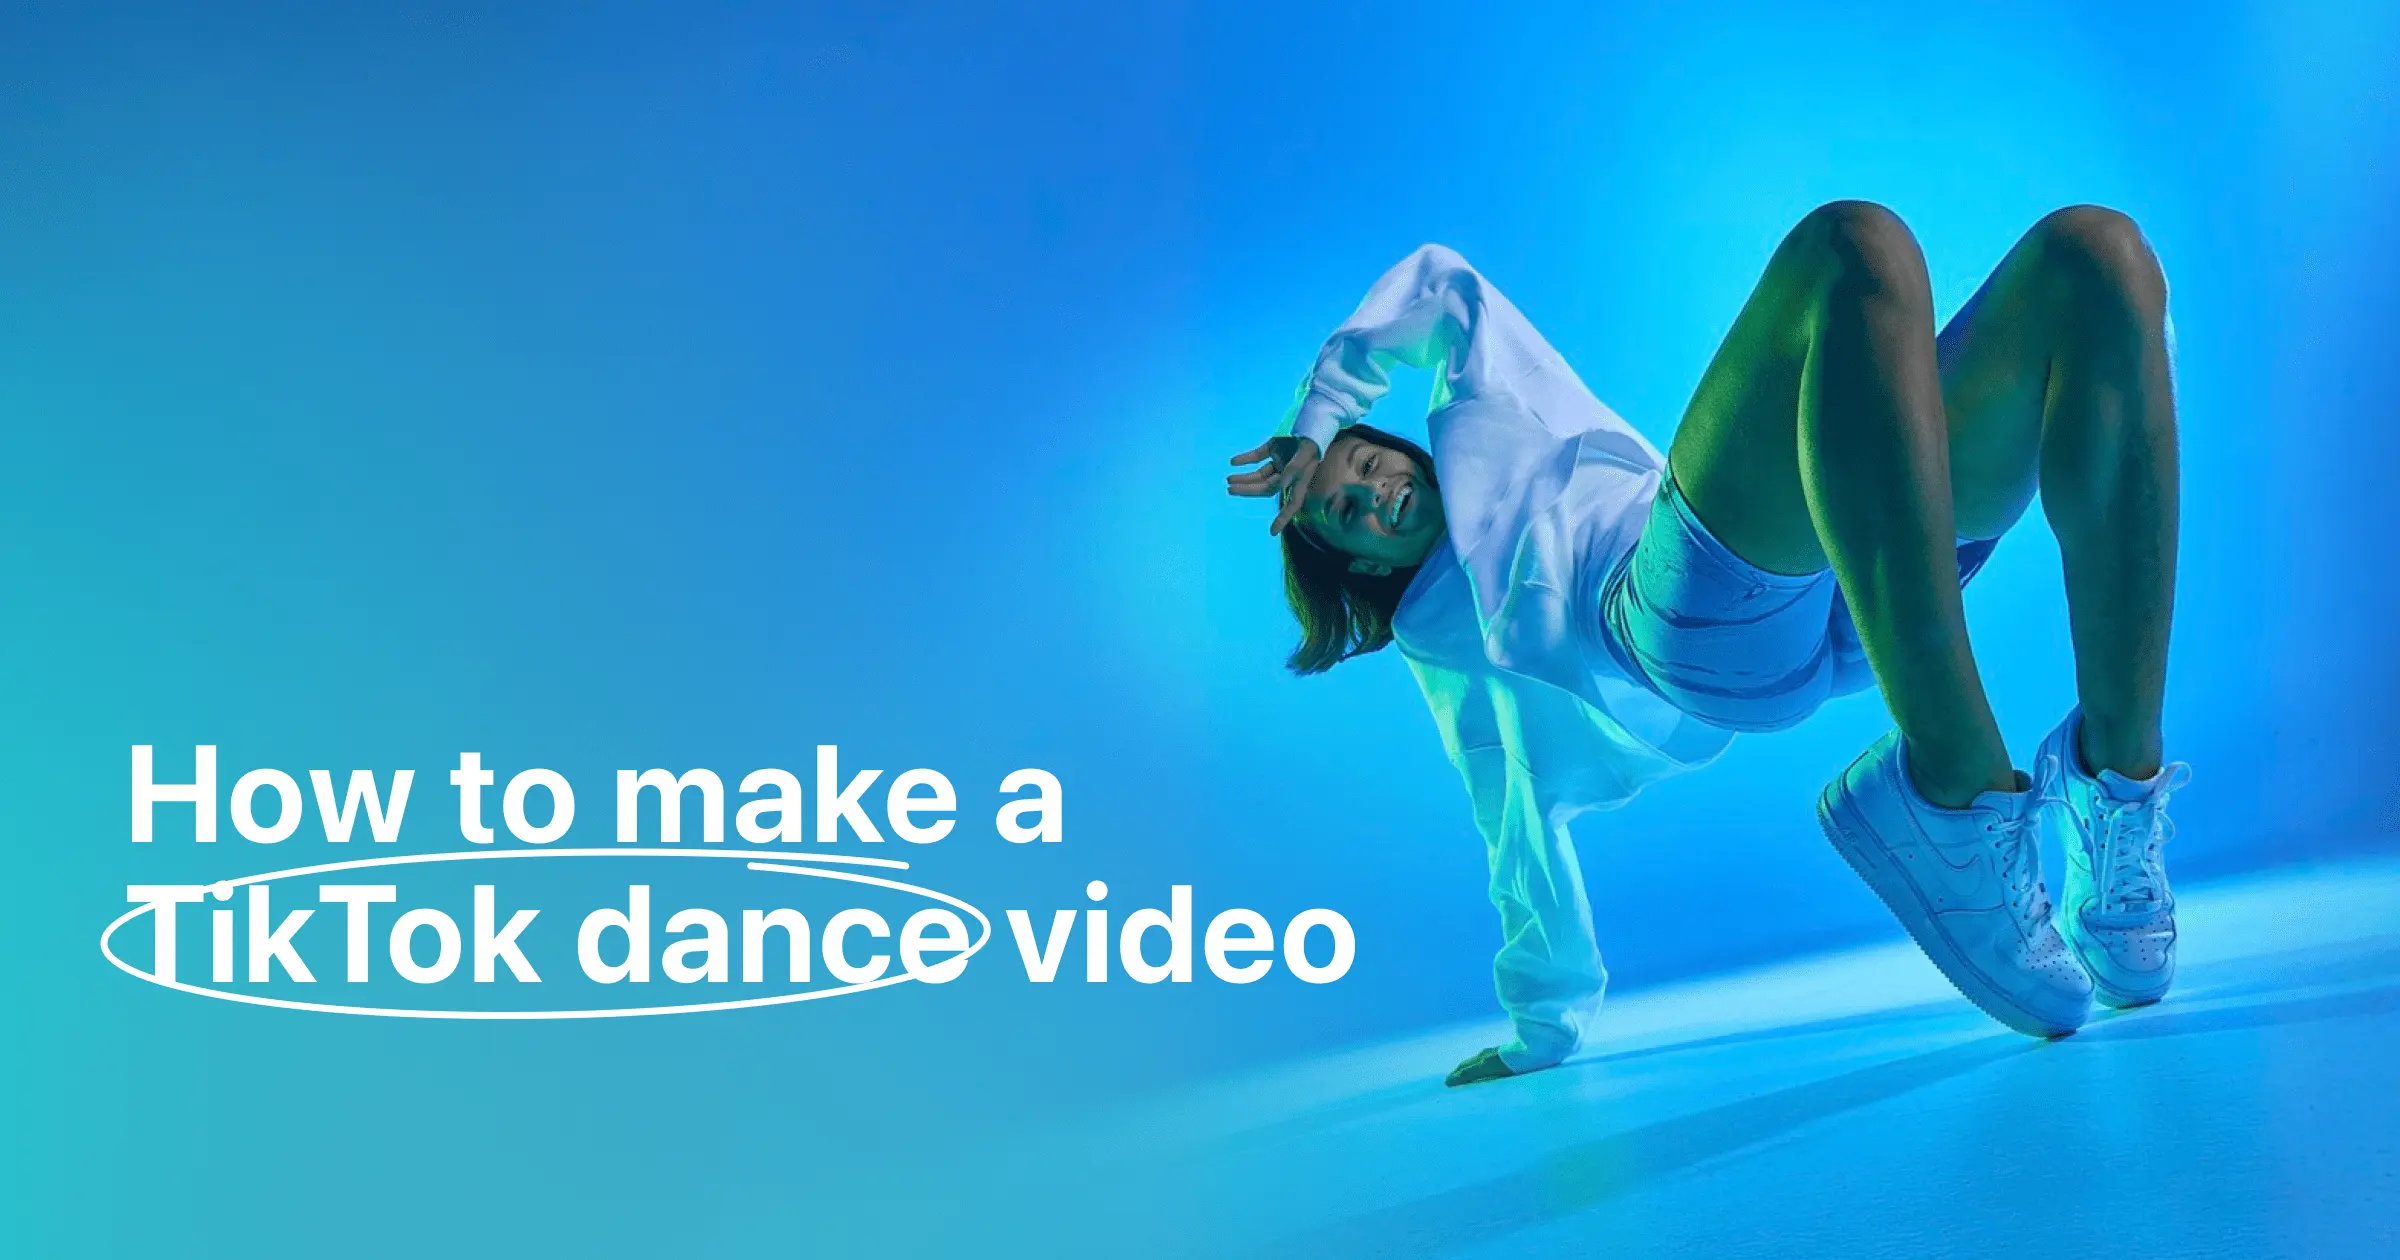 5 Easy Steps to Make a Viral TikTok Dance Video